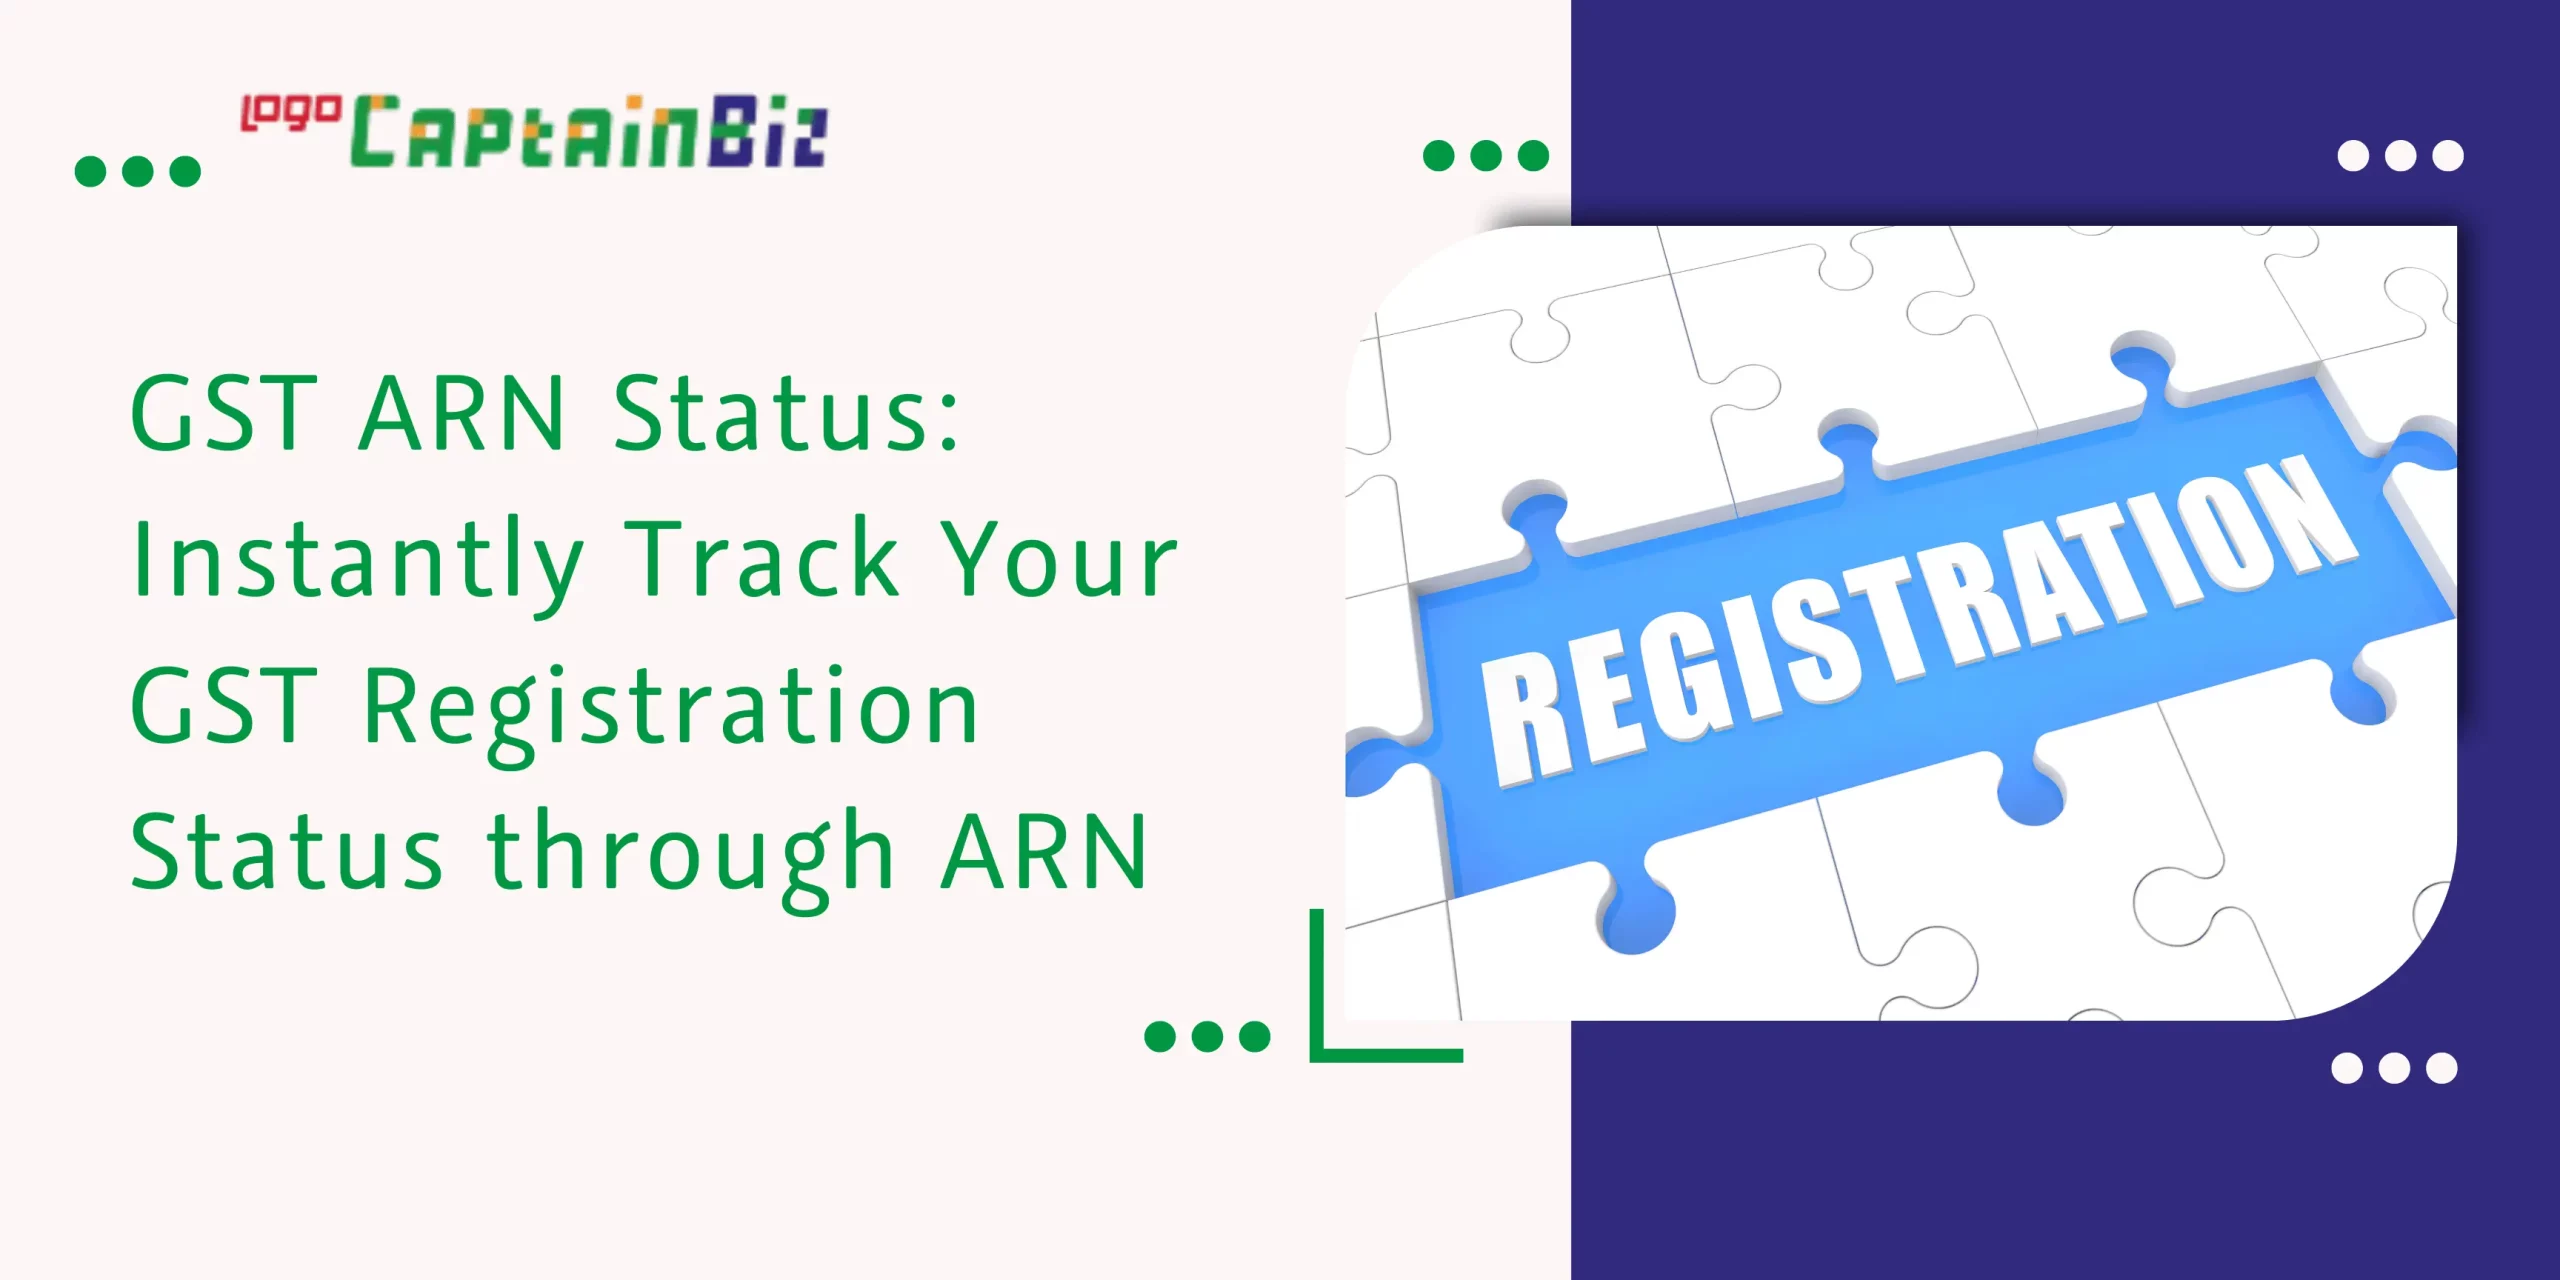 CaptainBiz: gst arn status: instantly track your gst registration status through arn